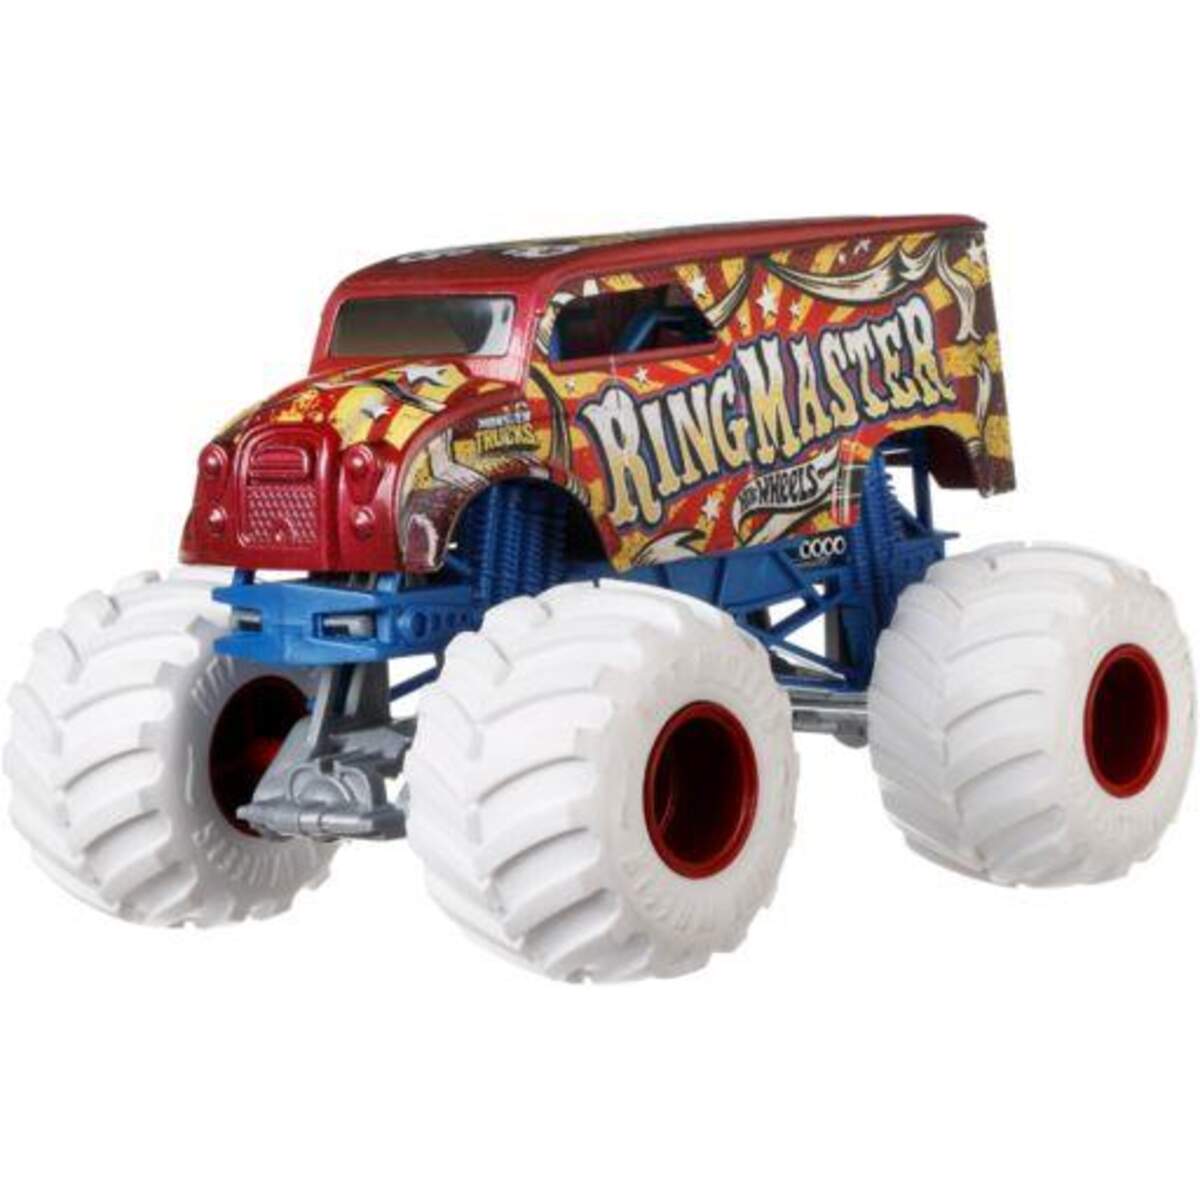 Mattel Hot Wheels Monster Trucks Die Cast Sortiment 1:24, 1 Stück, sortiert